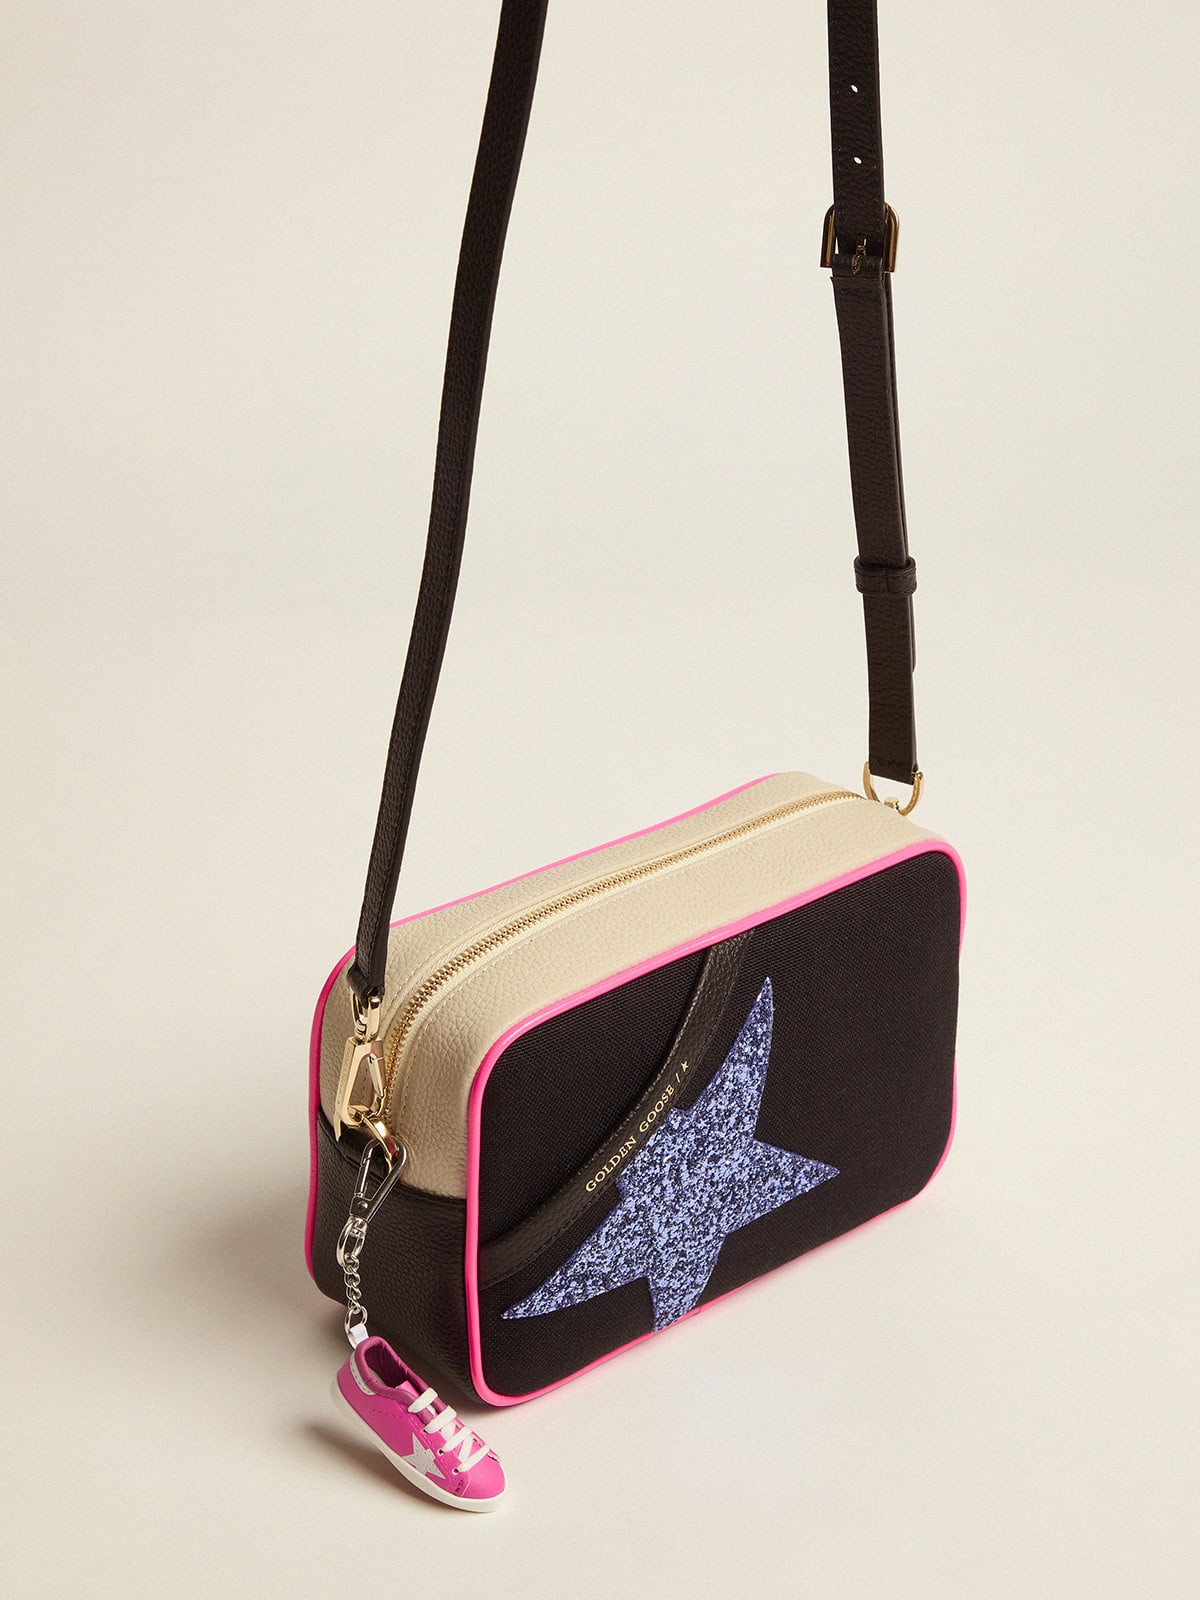 Golden Goose - Borsa Star Bag in canvas con inserti bianco latte in pelle martellata e stella glitter color viola in 